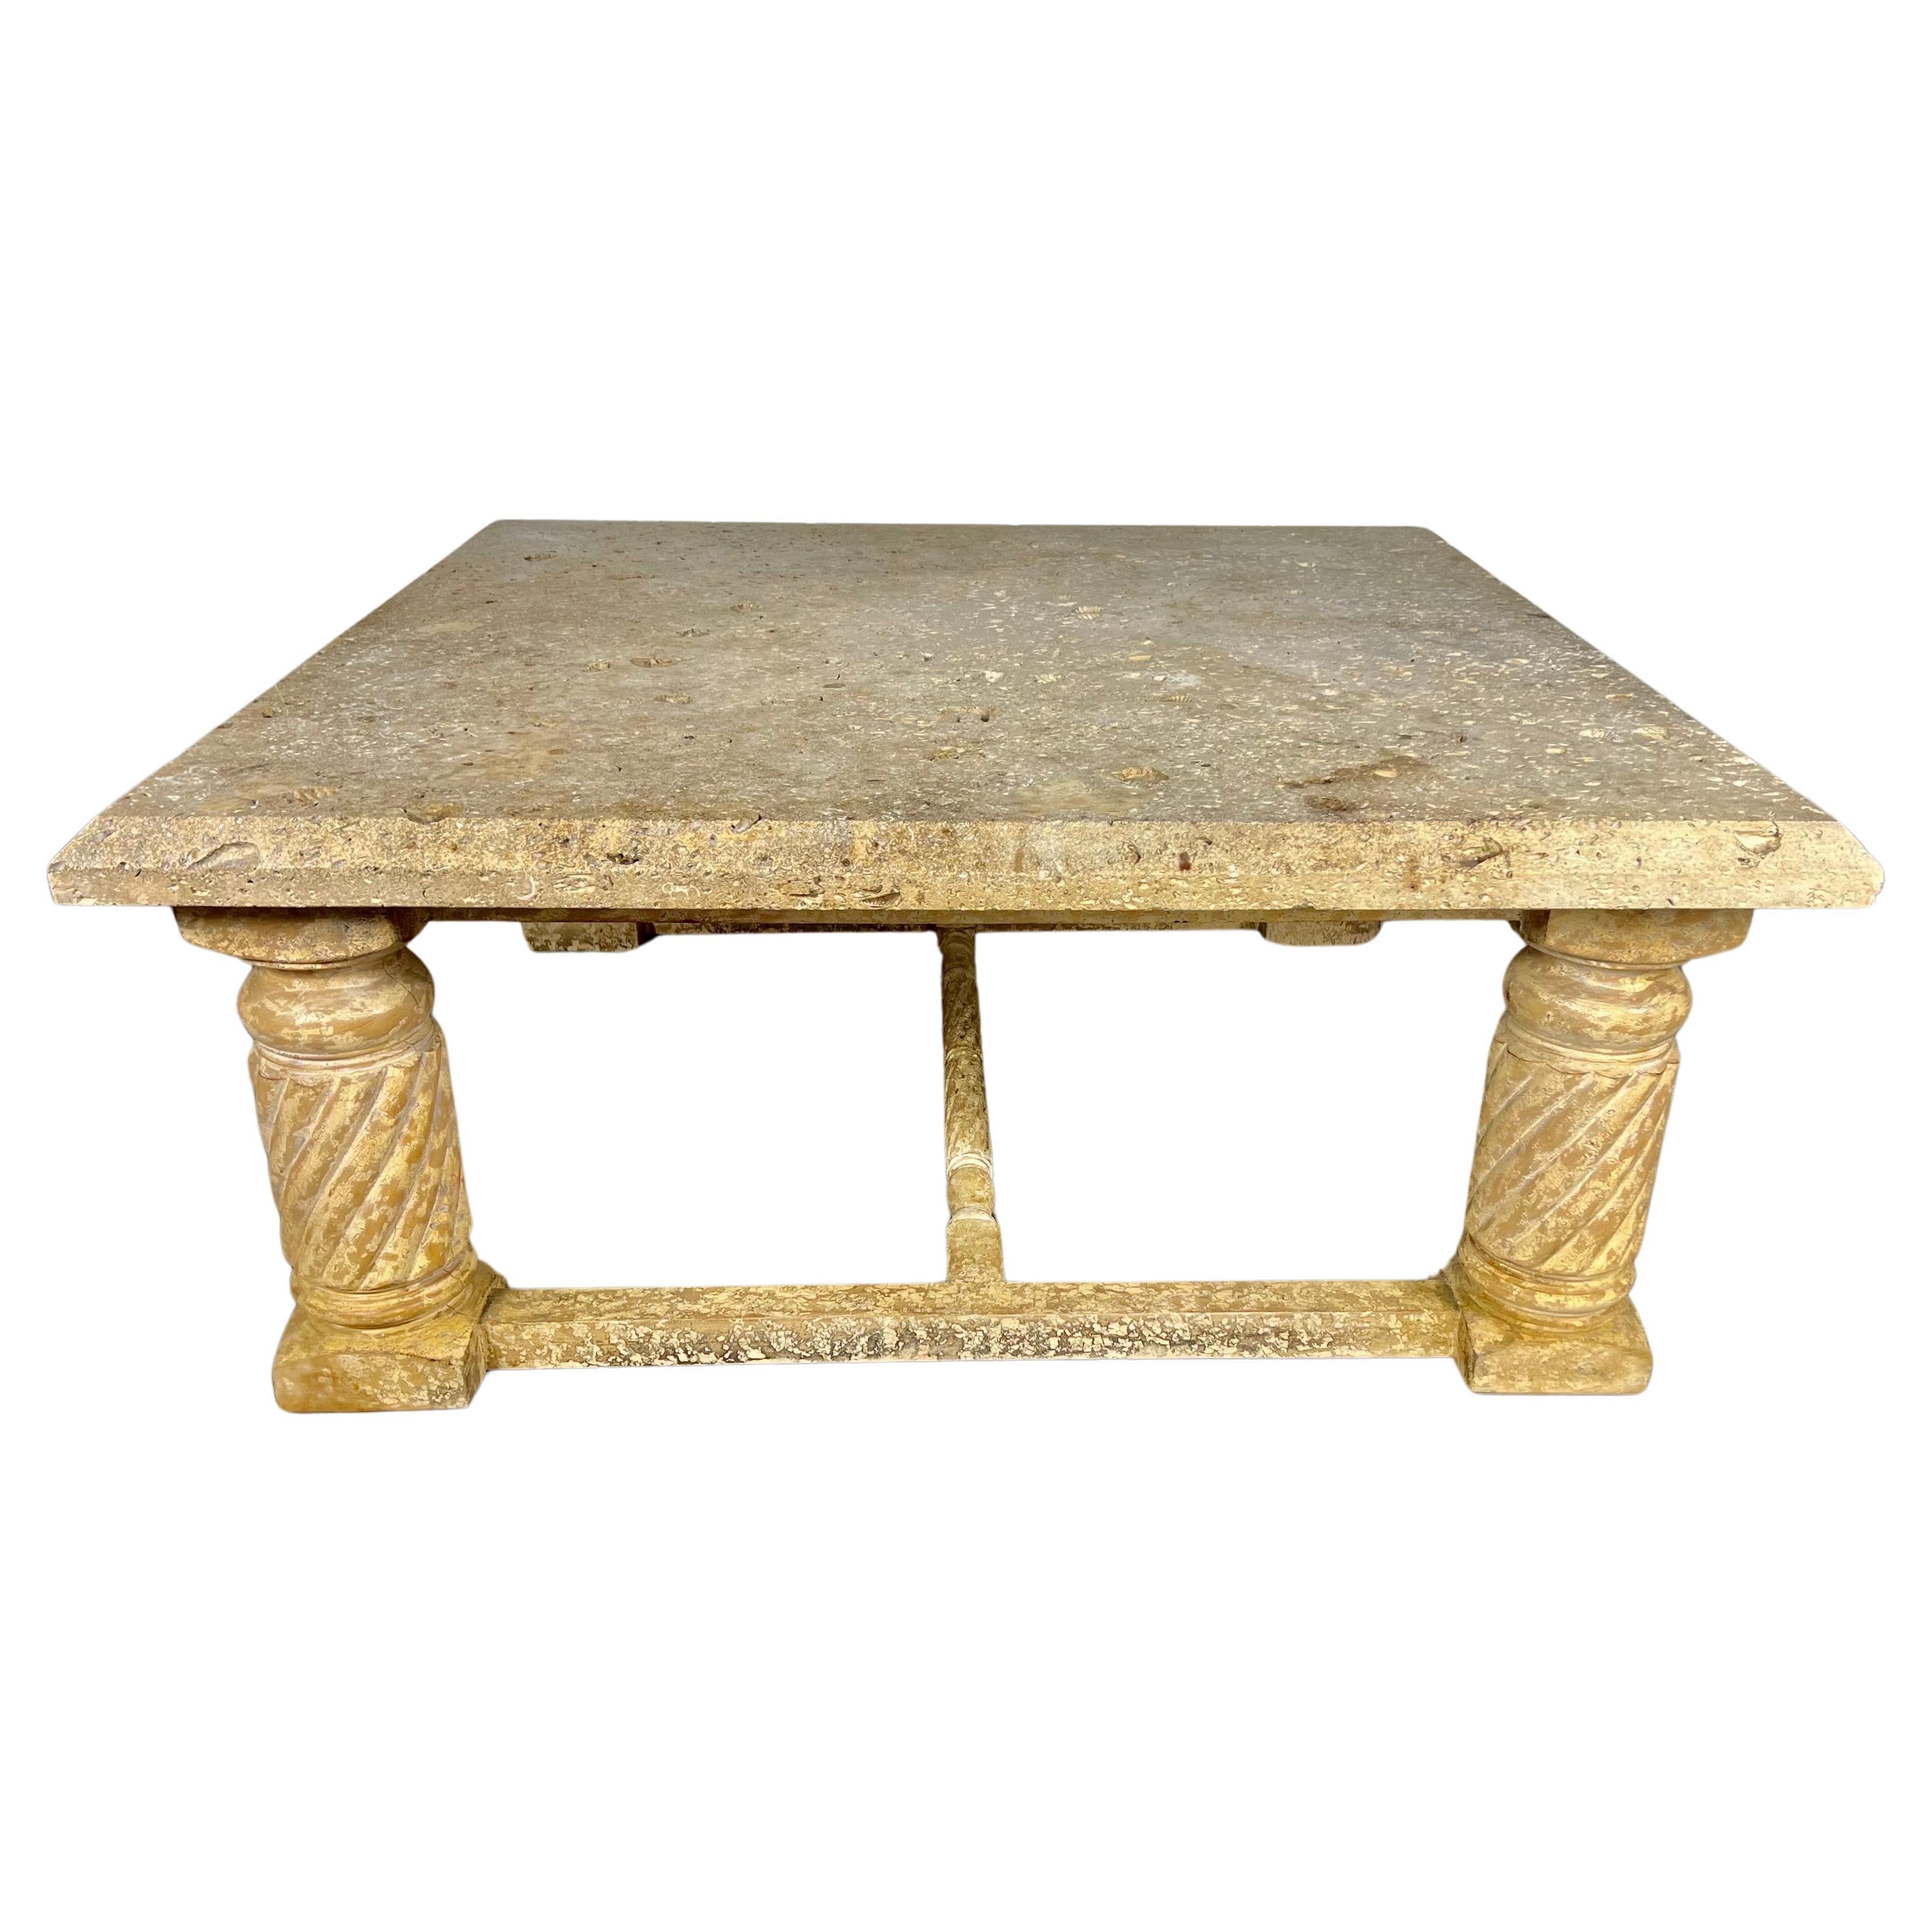 Table basse de style néoclassique italien de la fin du 20e siècle.  La table repose sur quatre pieds droits en bois torsadé.  La base en bois présente une belle finition craquelée.  Le sommet en pierre calcaire est parsemé d'empreintes de